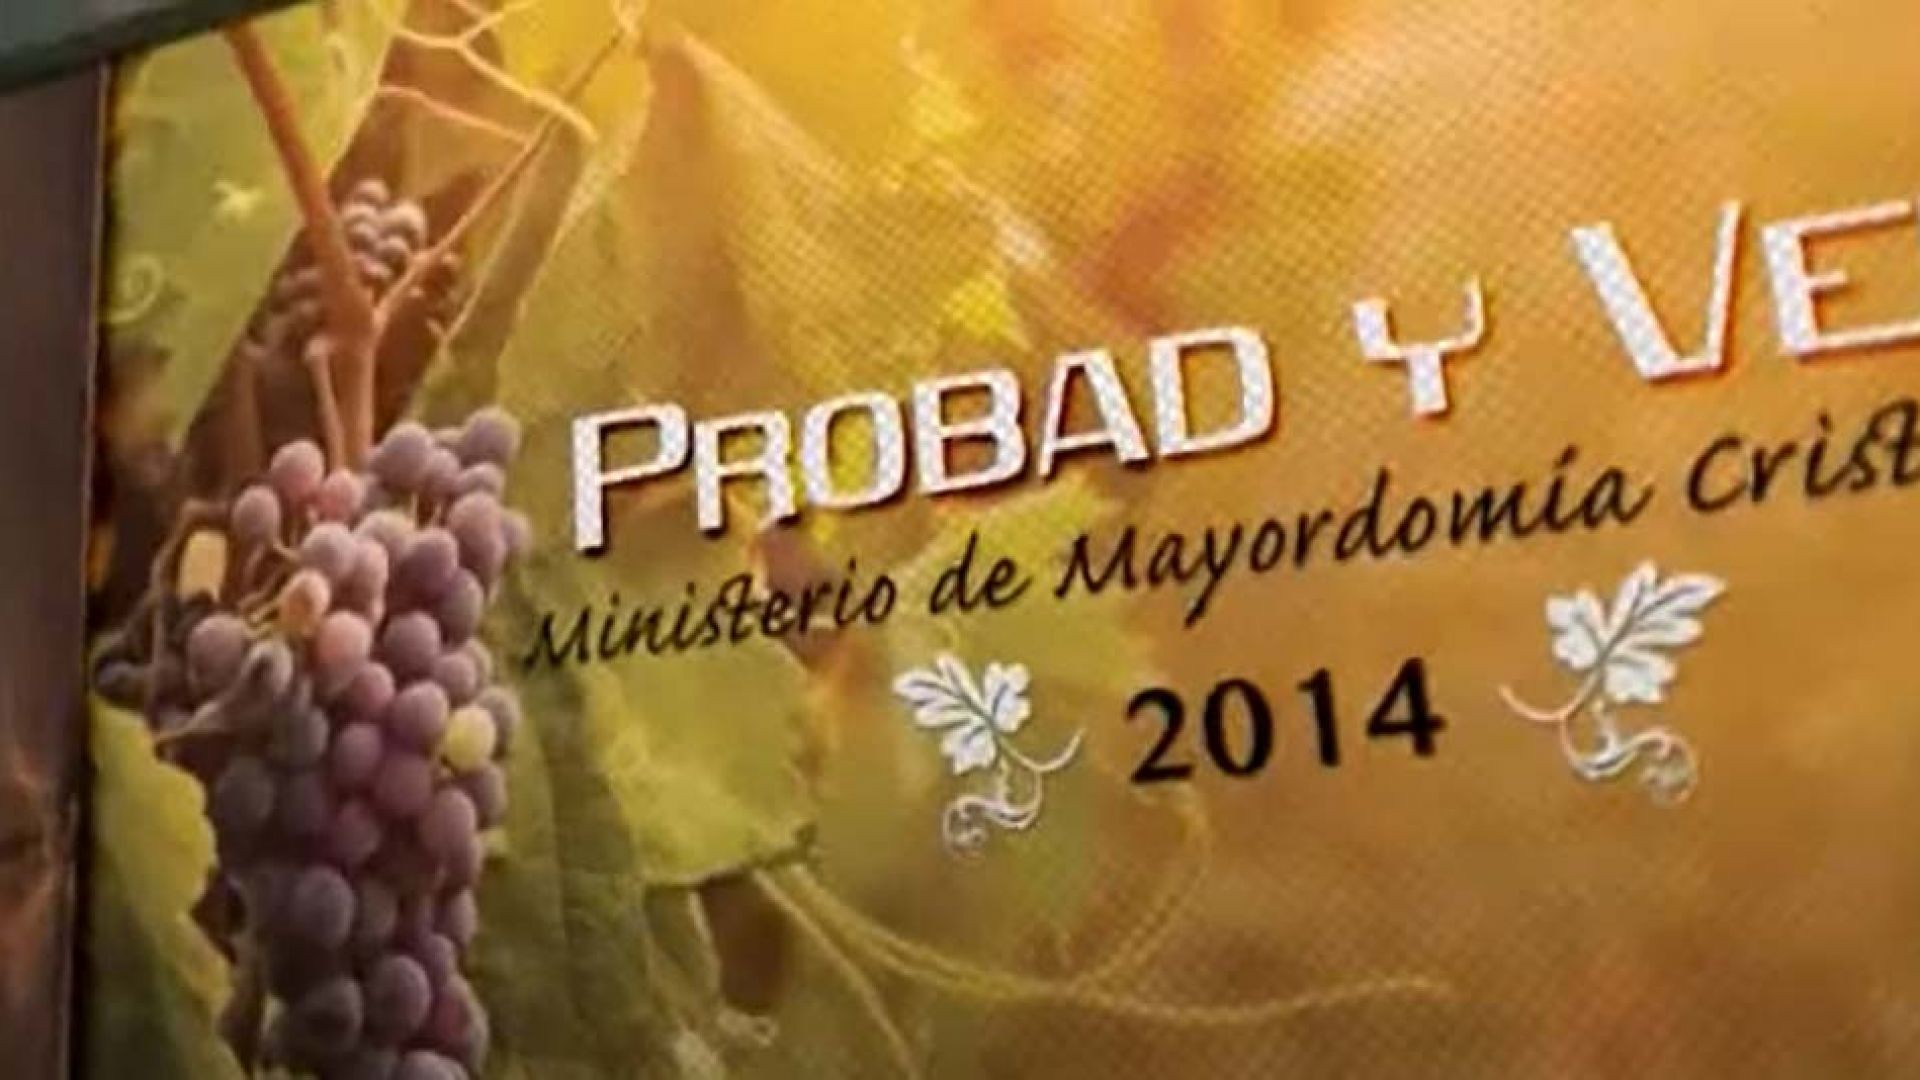 31/May. Probad y Ved 2014: Pruebas y resultados| Iglesia Adventista